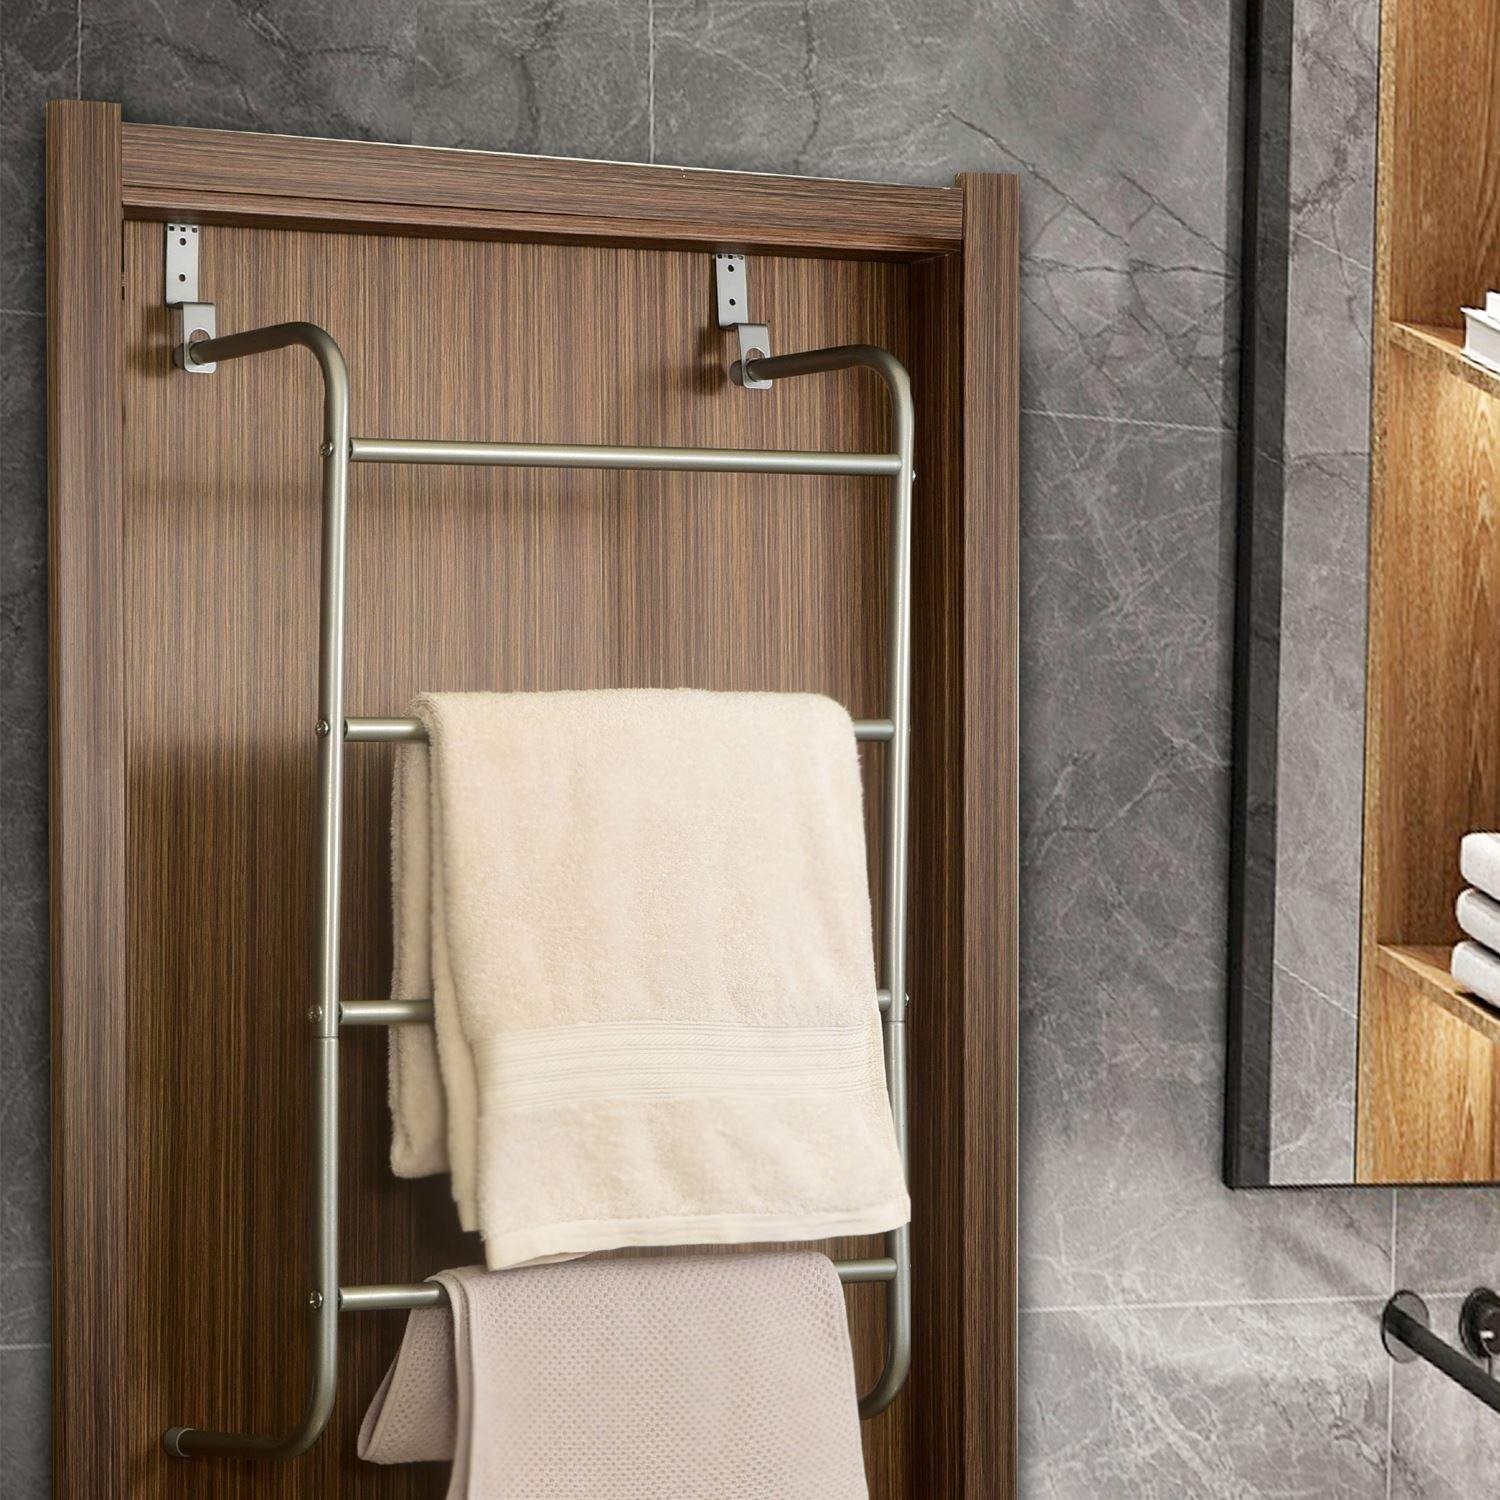 Over-Door Towel Rack 4-Tier Bathroom Silver Storage Hanger Rail Bath Hand Towels - image 1